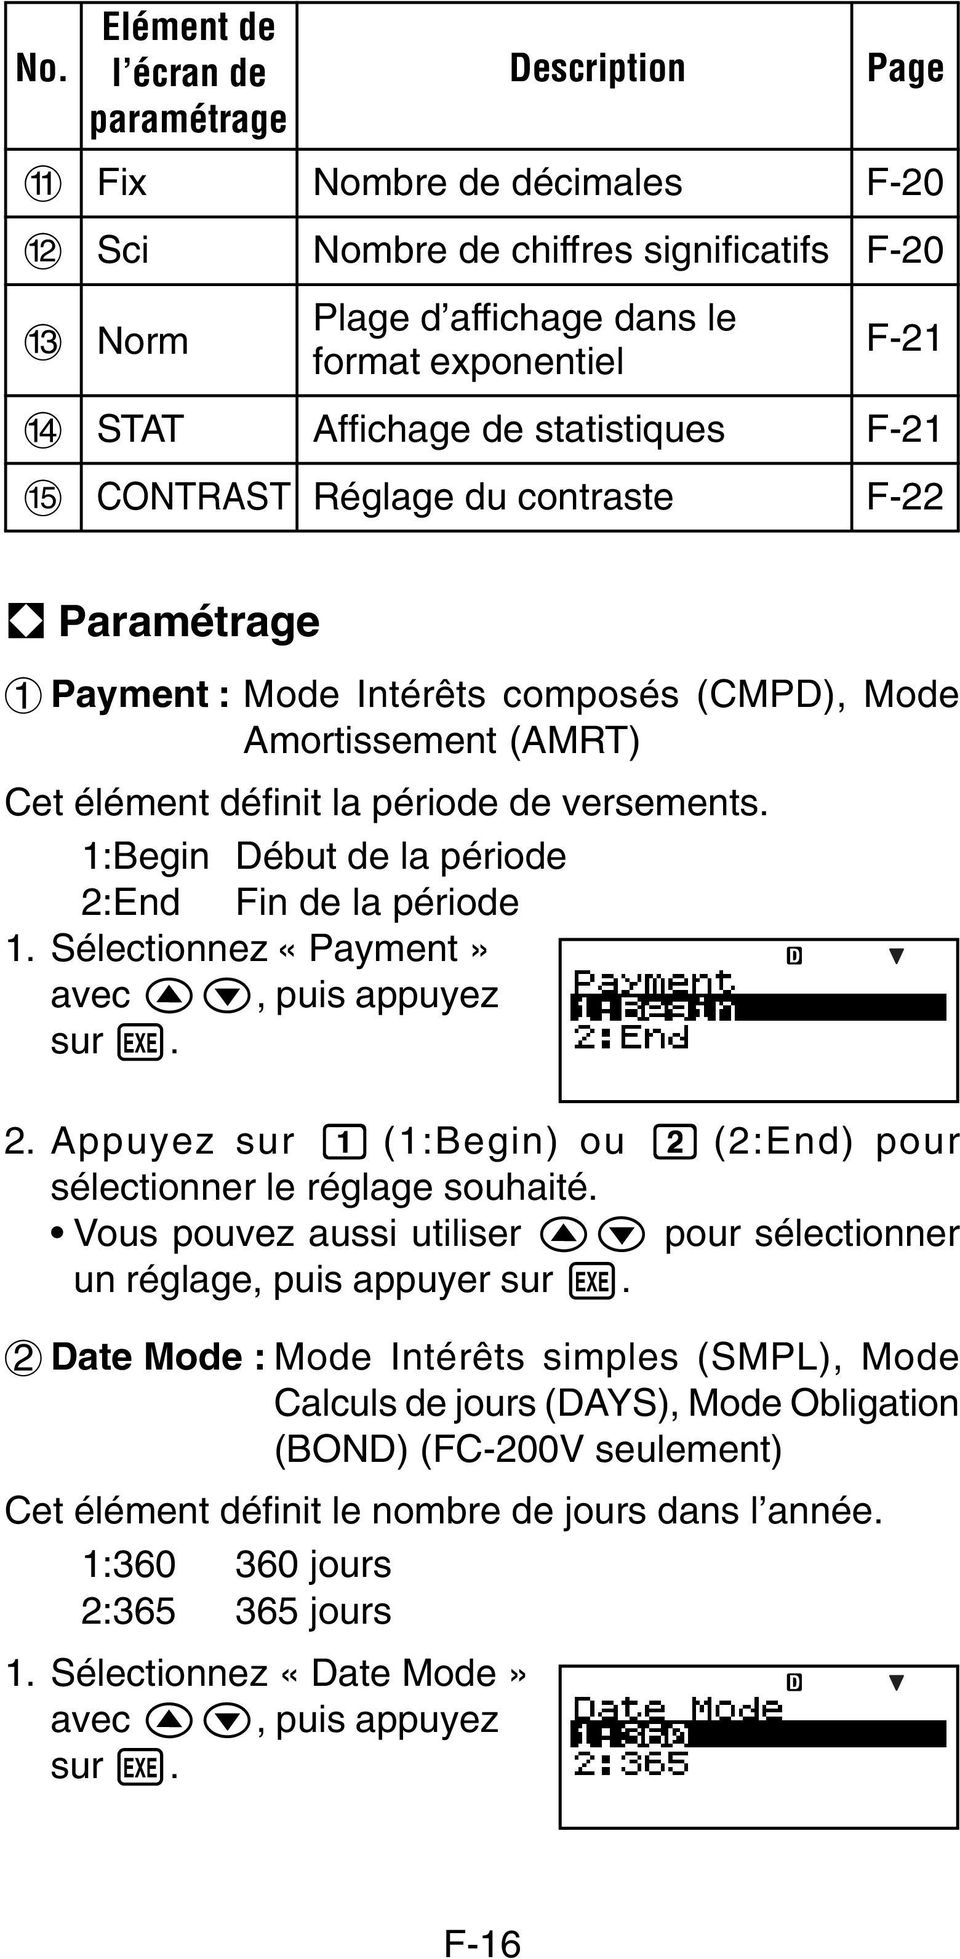 A Paramétrage 1 Payment : Mode Intérêts composés (CMPD), Mode Amortissement (AMRT) Cet élément définit la période de versements. 1:Begin Début de la période 2:End Fin de la période 1.